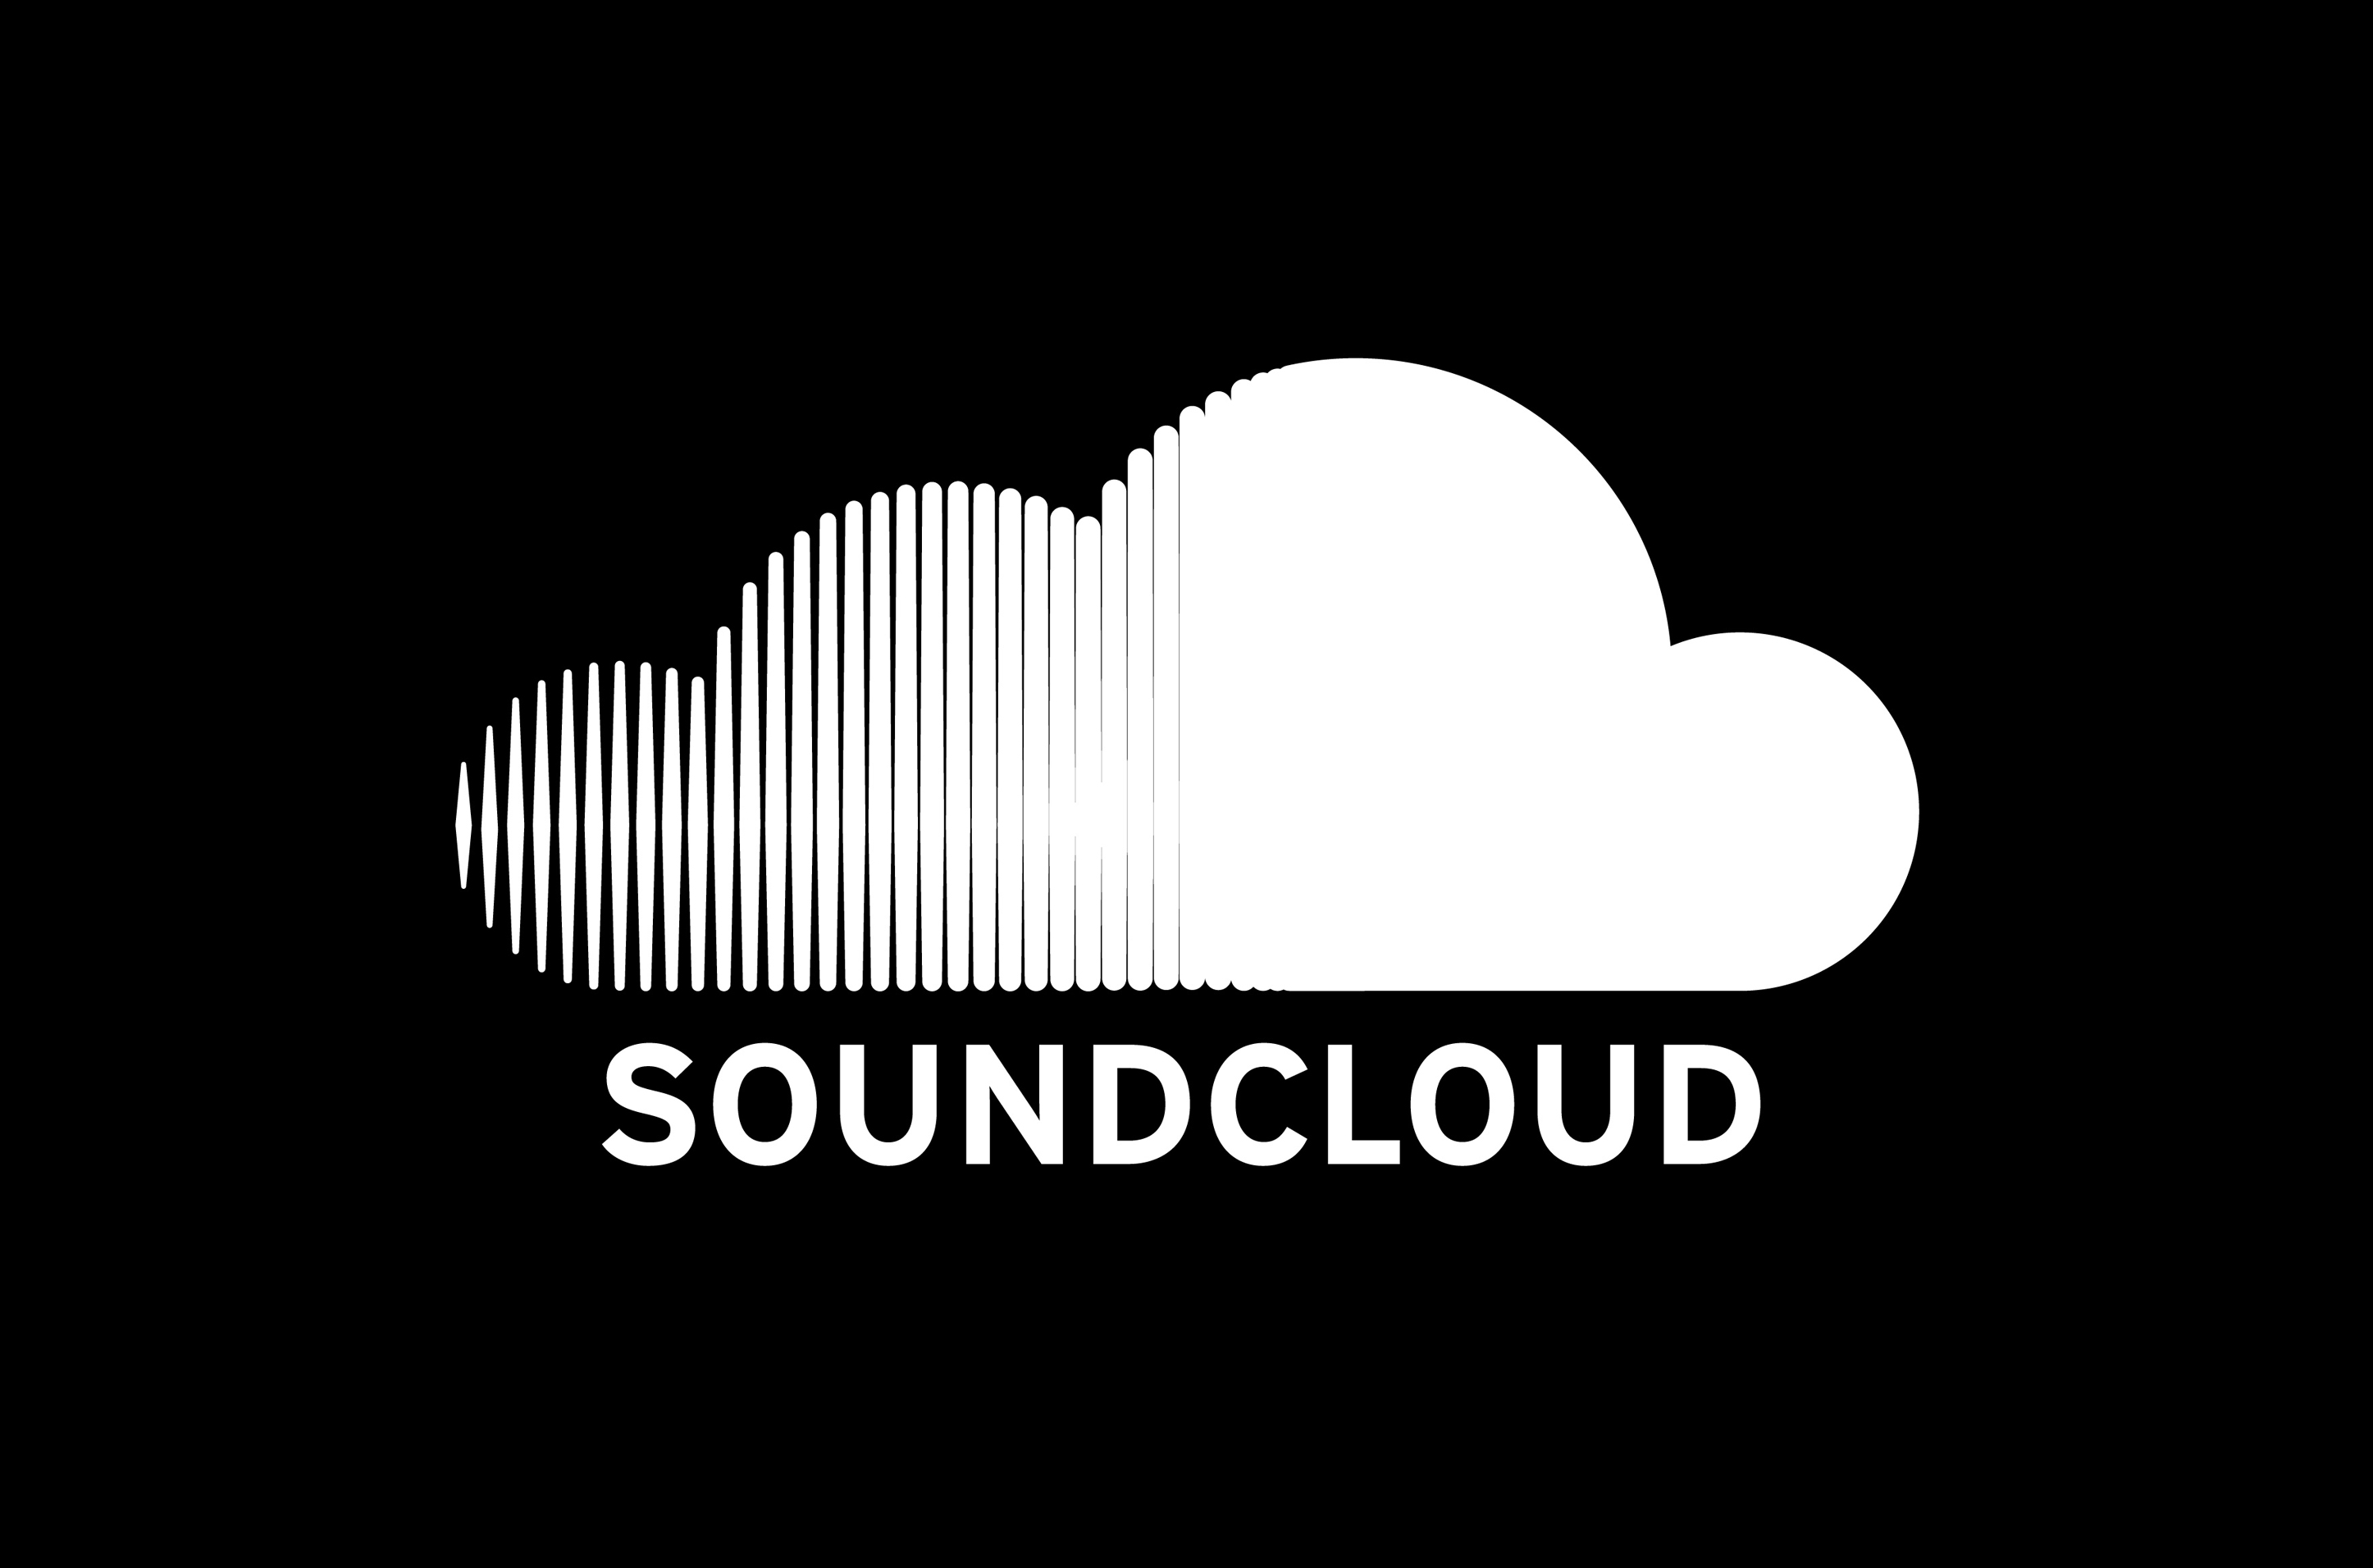 soundcloud downloader copyright infringement